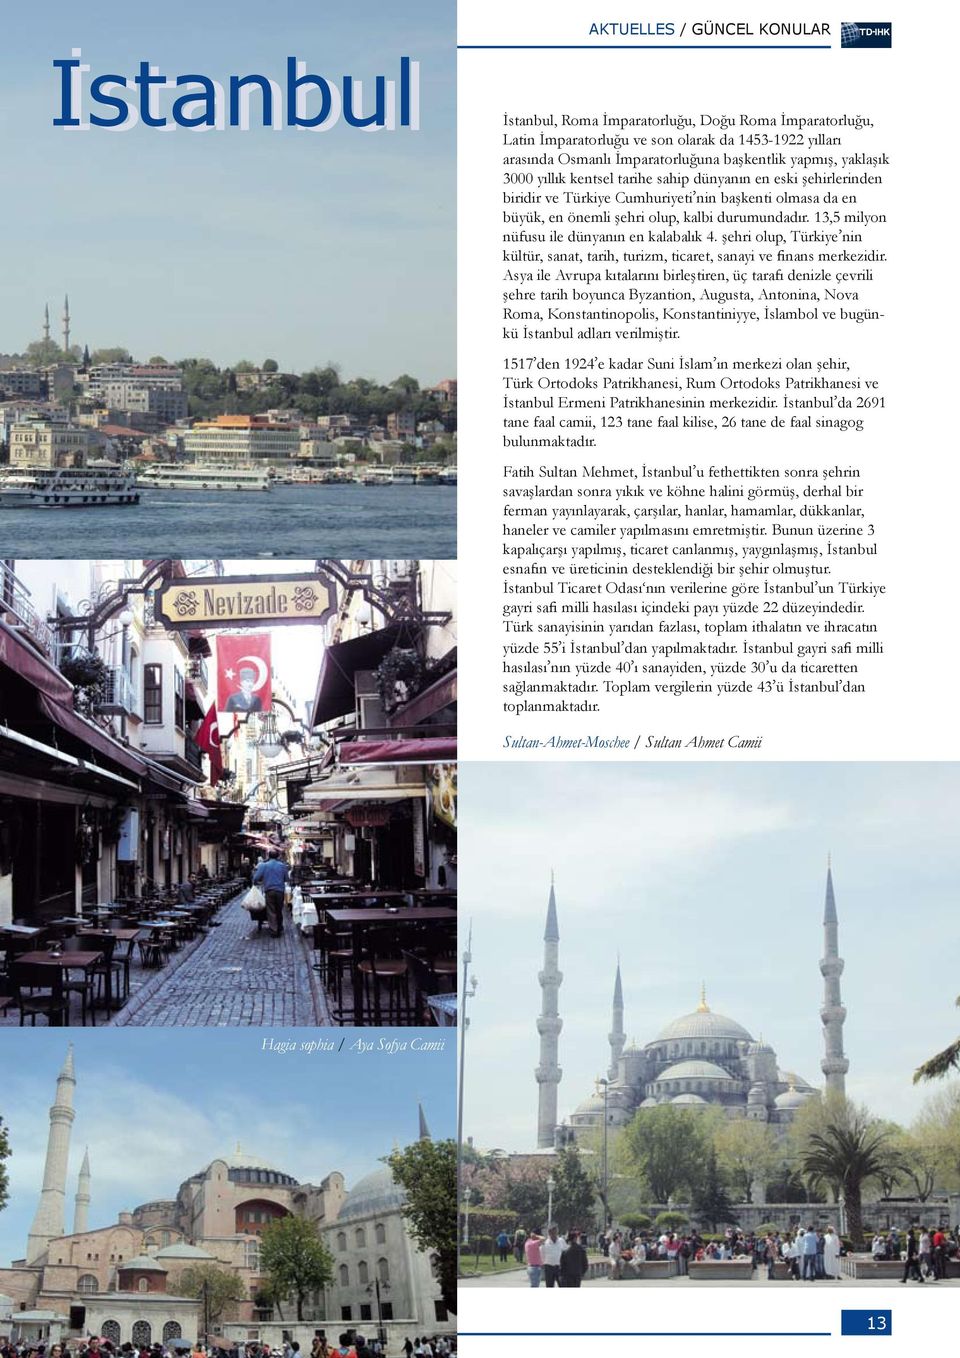 13,5 milyon nüfusu ile dünyanın en kalabalık 4. şehri olup, Türkiye nin kültür, sanat, tarih, turizm, ticaret, sanayi ve finans merkezidir.